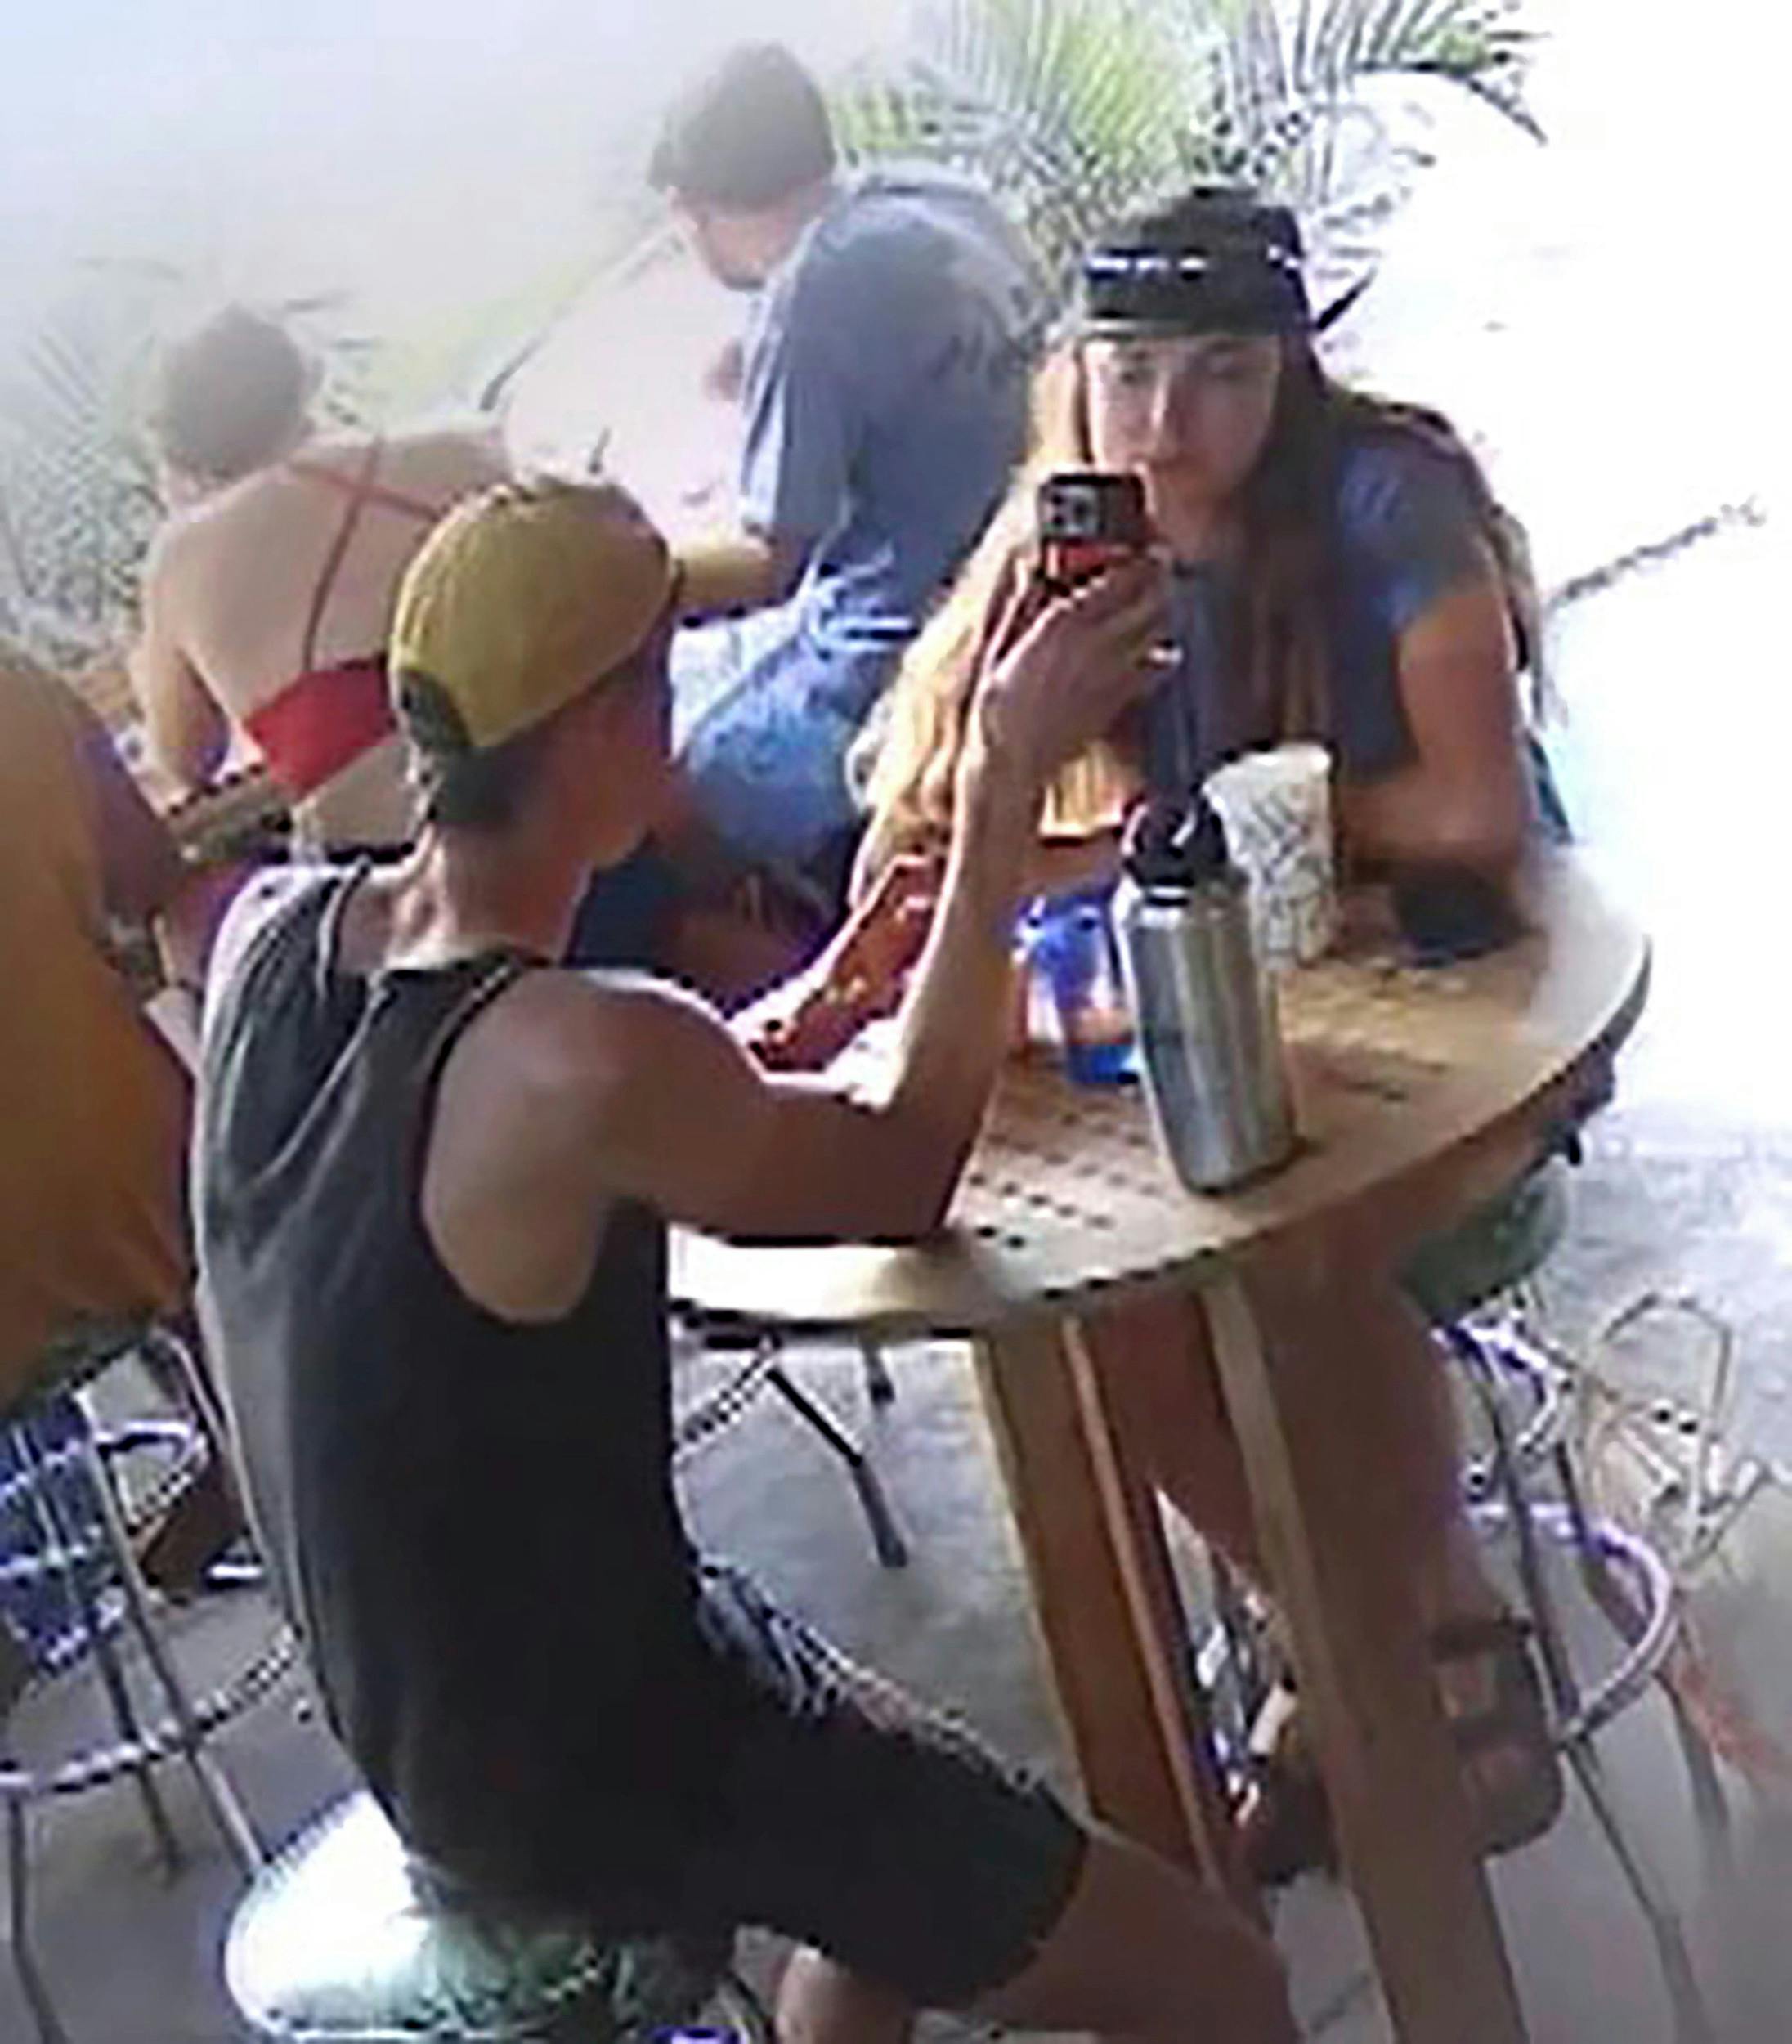 En overvågningsvideo fangede Colin Strickland og Moriah Wilson på burgerbaren, kort før hun blev myrdet.